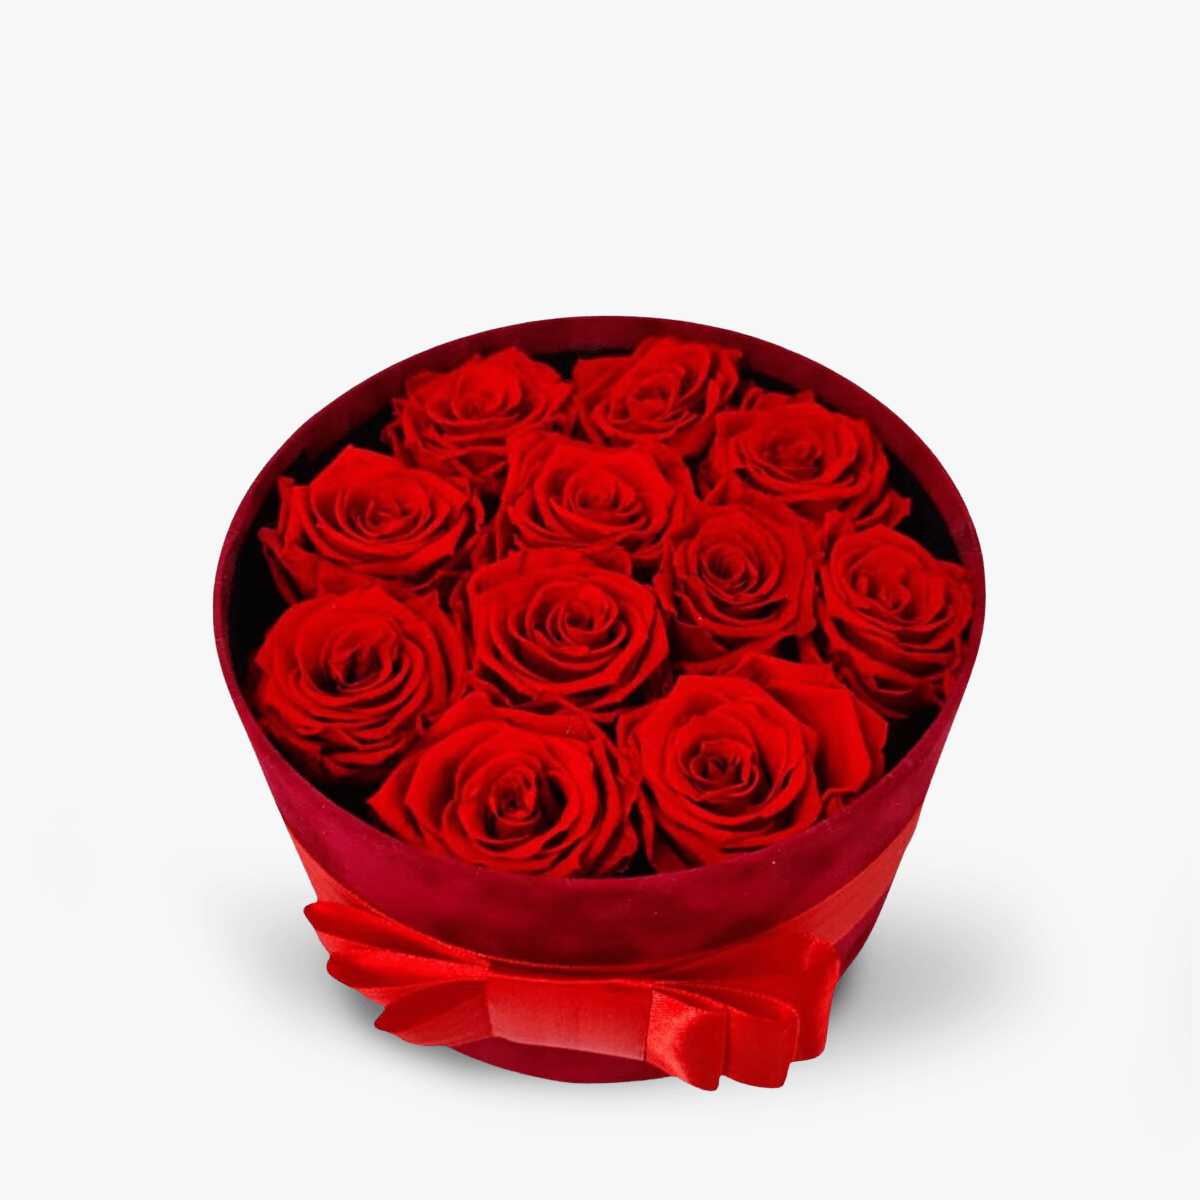 Cutie cu 11 trandafiri rosii, criogenati – Standard